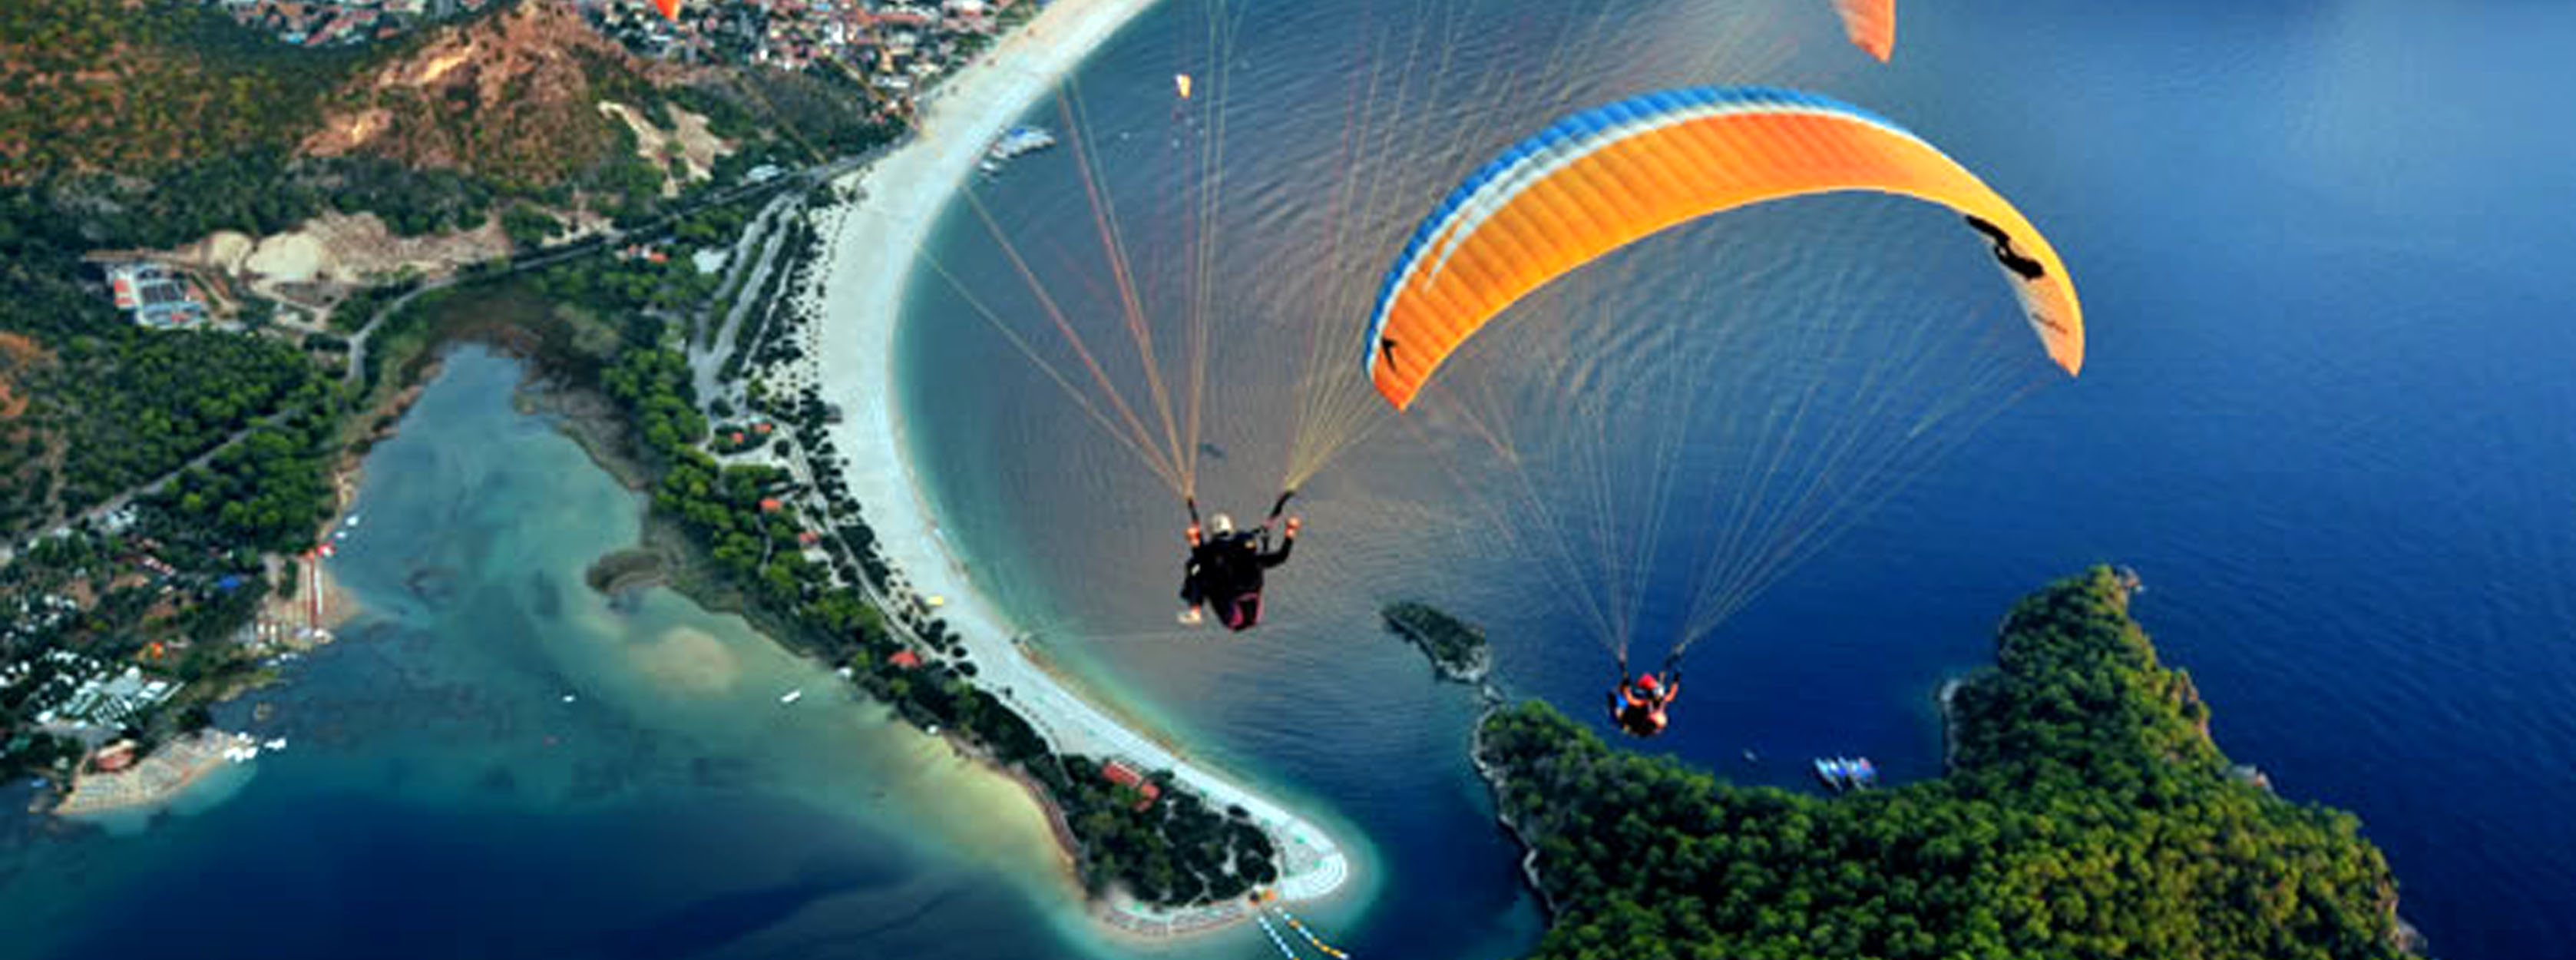 死海滑翔伞 Oludeniz Paragliding